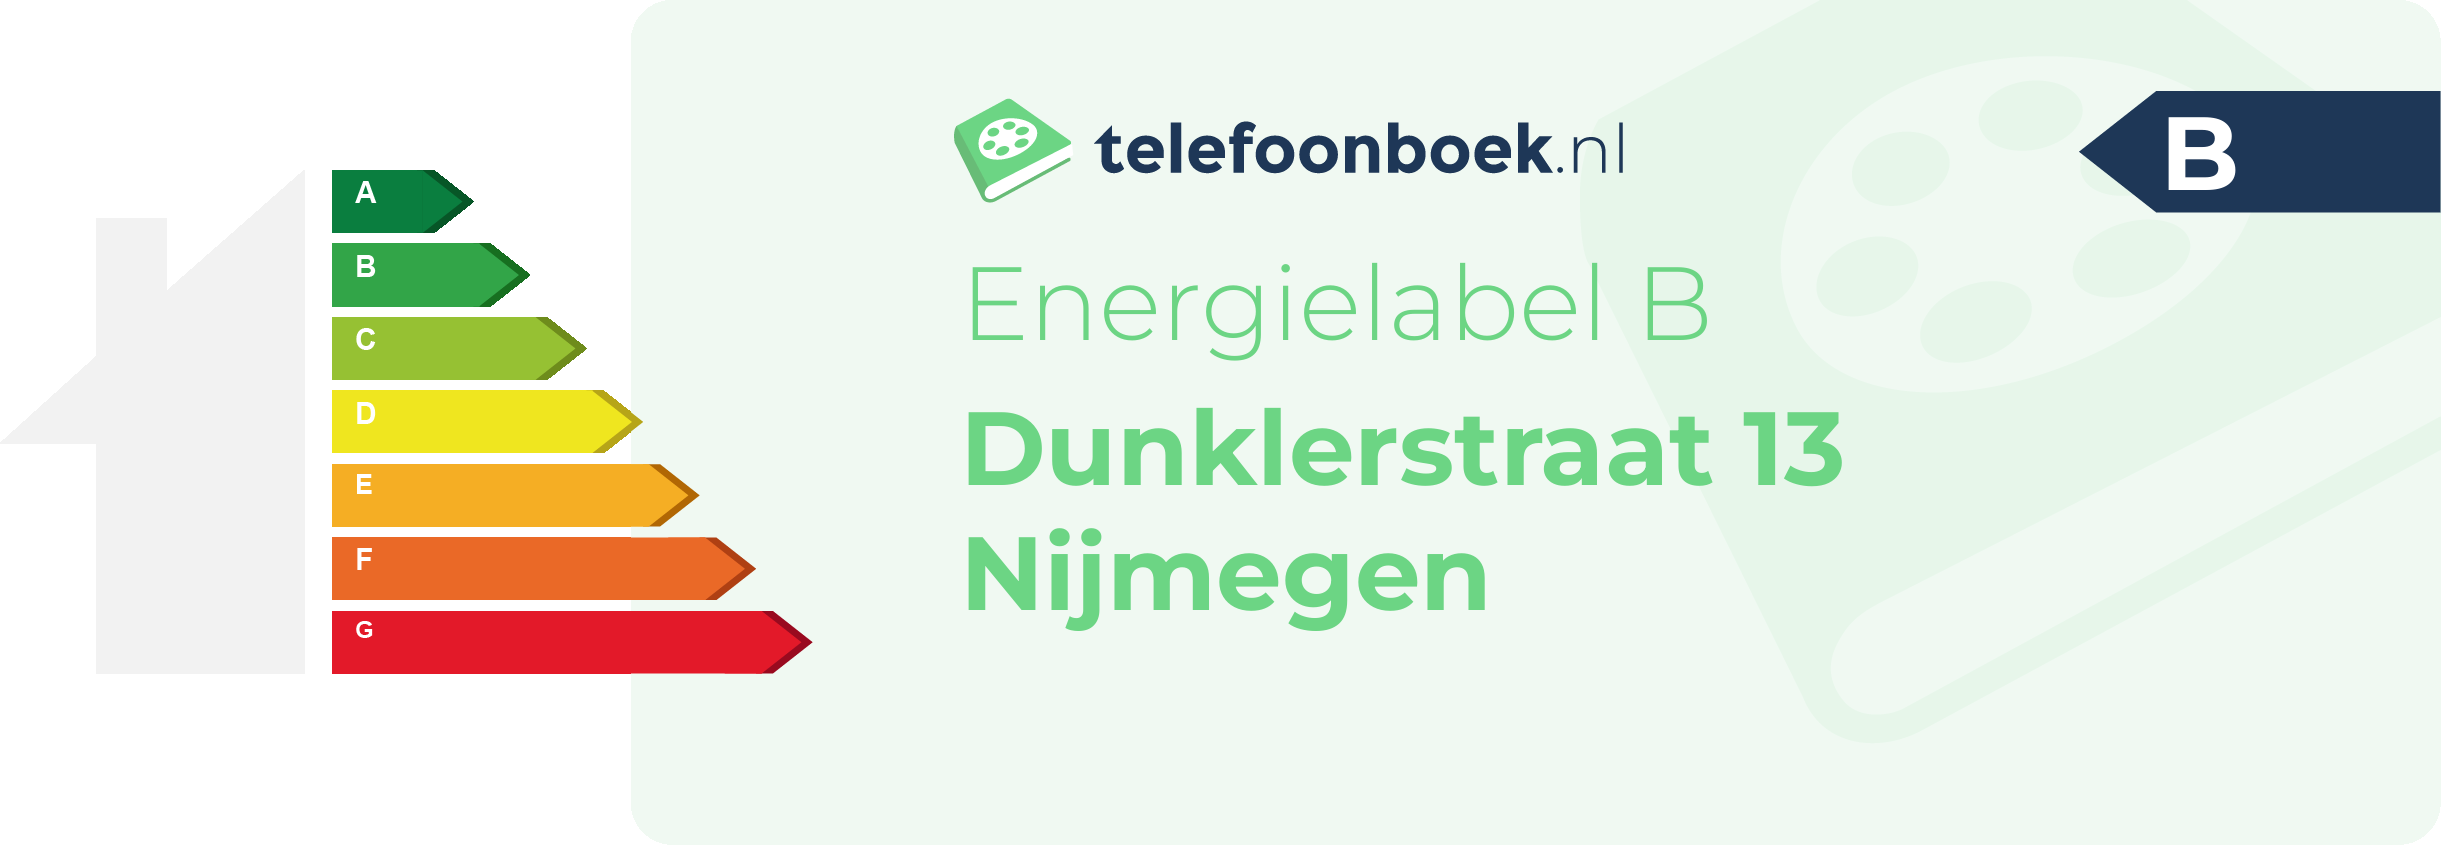 Energielabel Dunklerstraat 13 Nijmegen